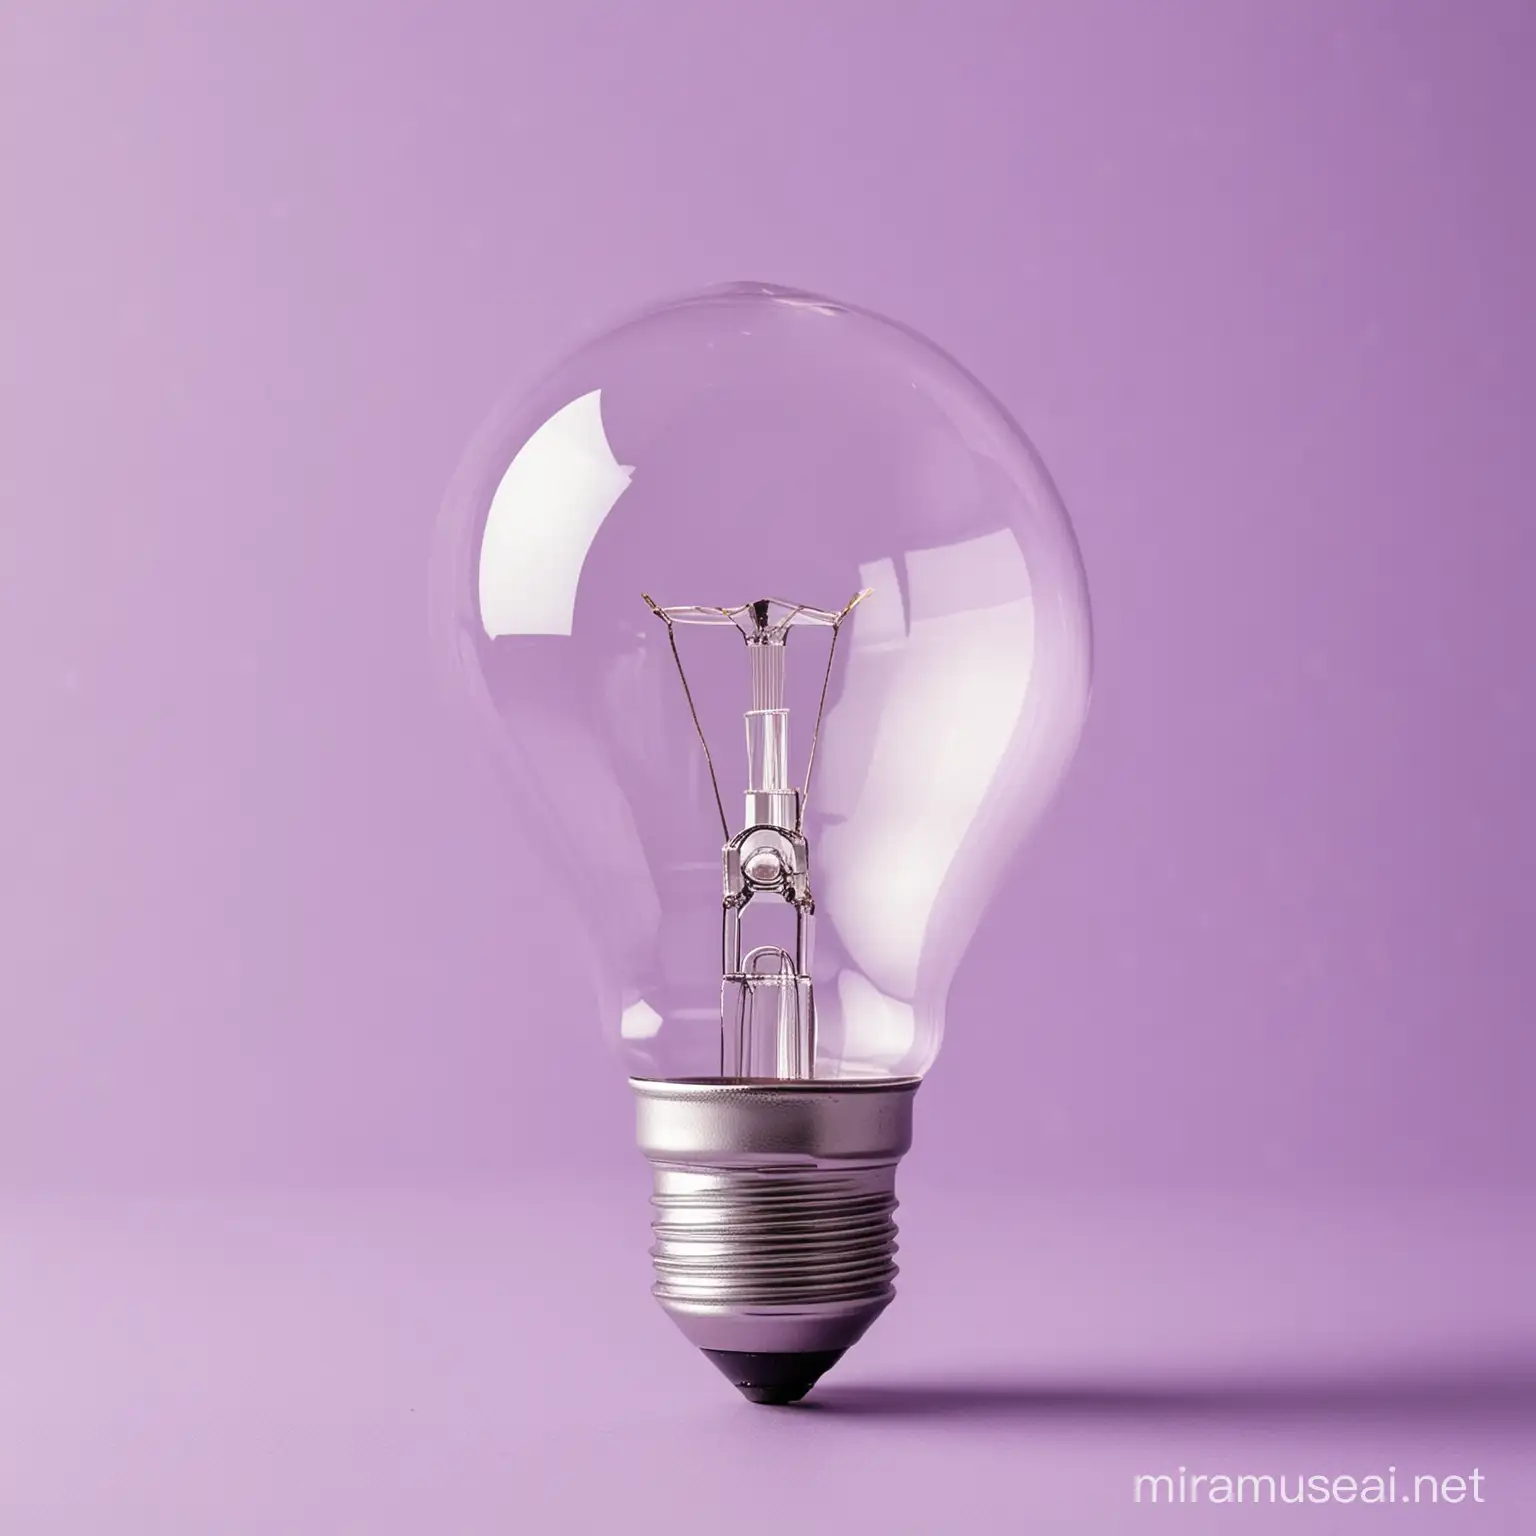 Illuminating Light Bulb on a Vibrant Pastel Purple Backdrop